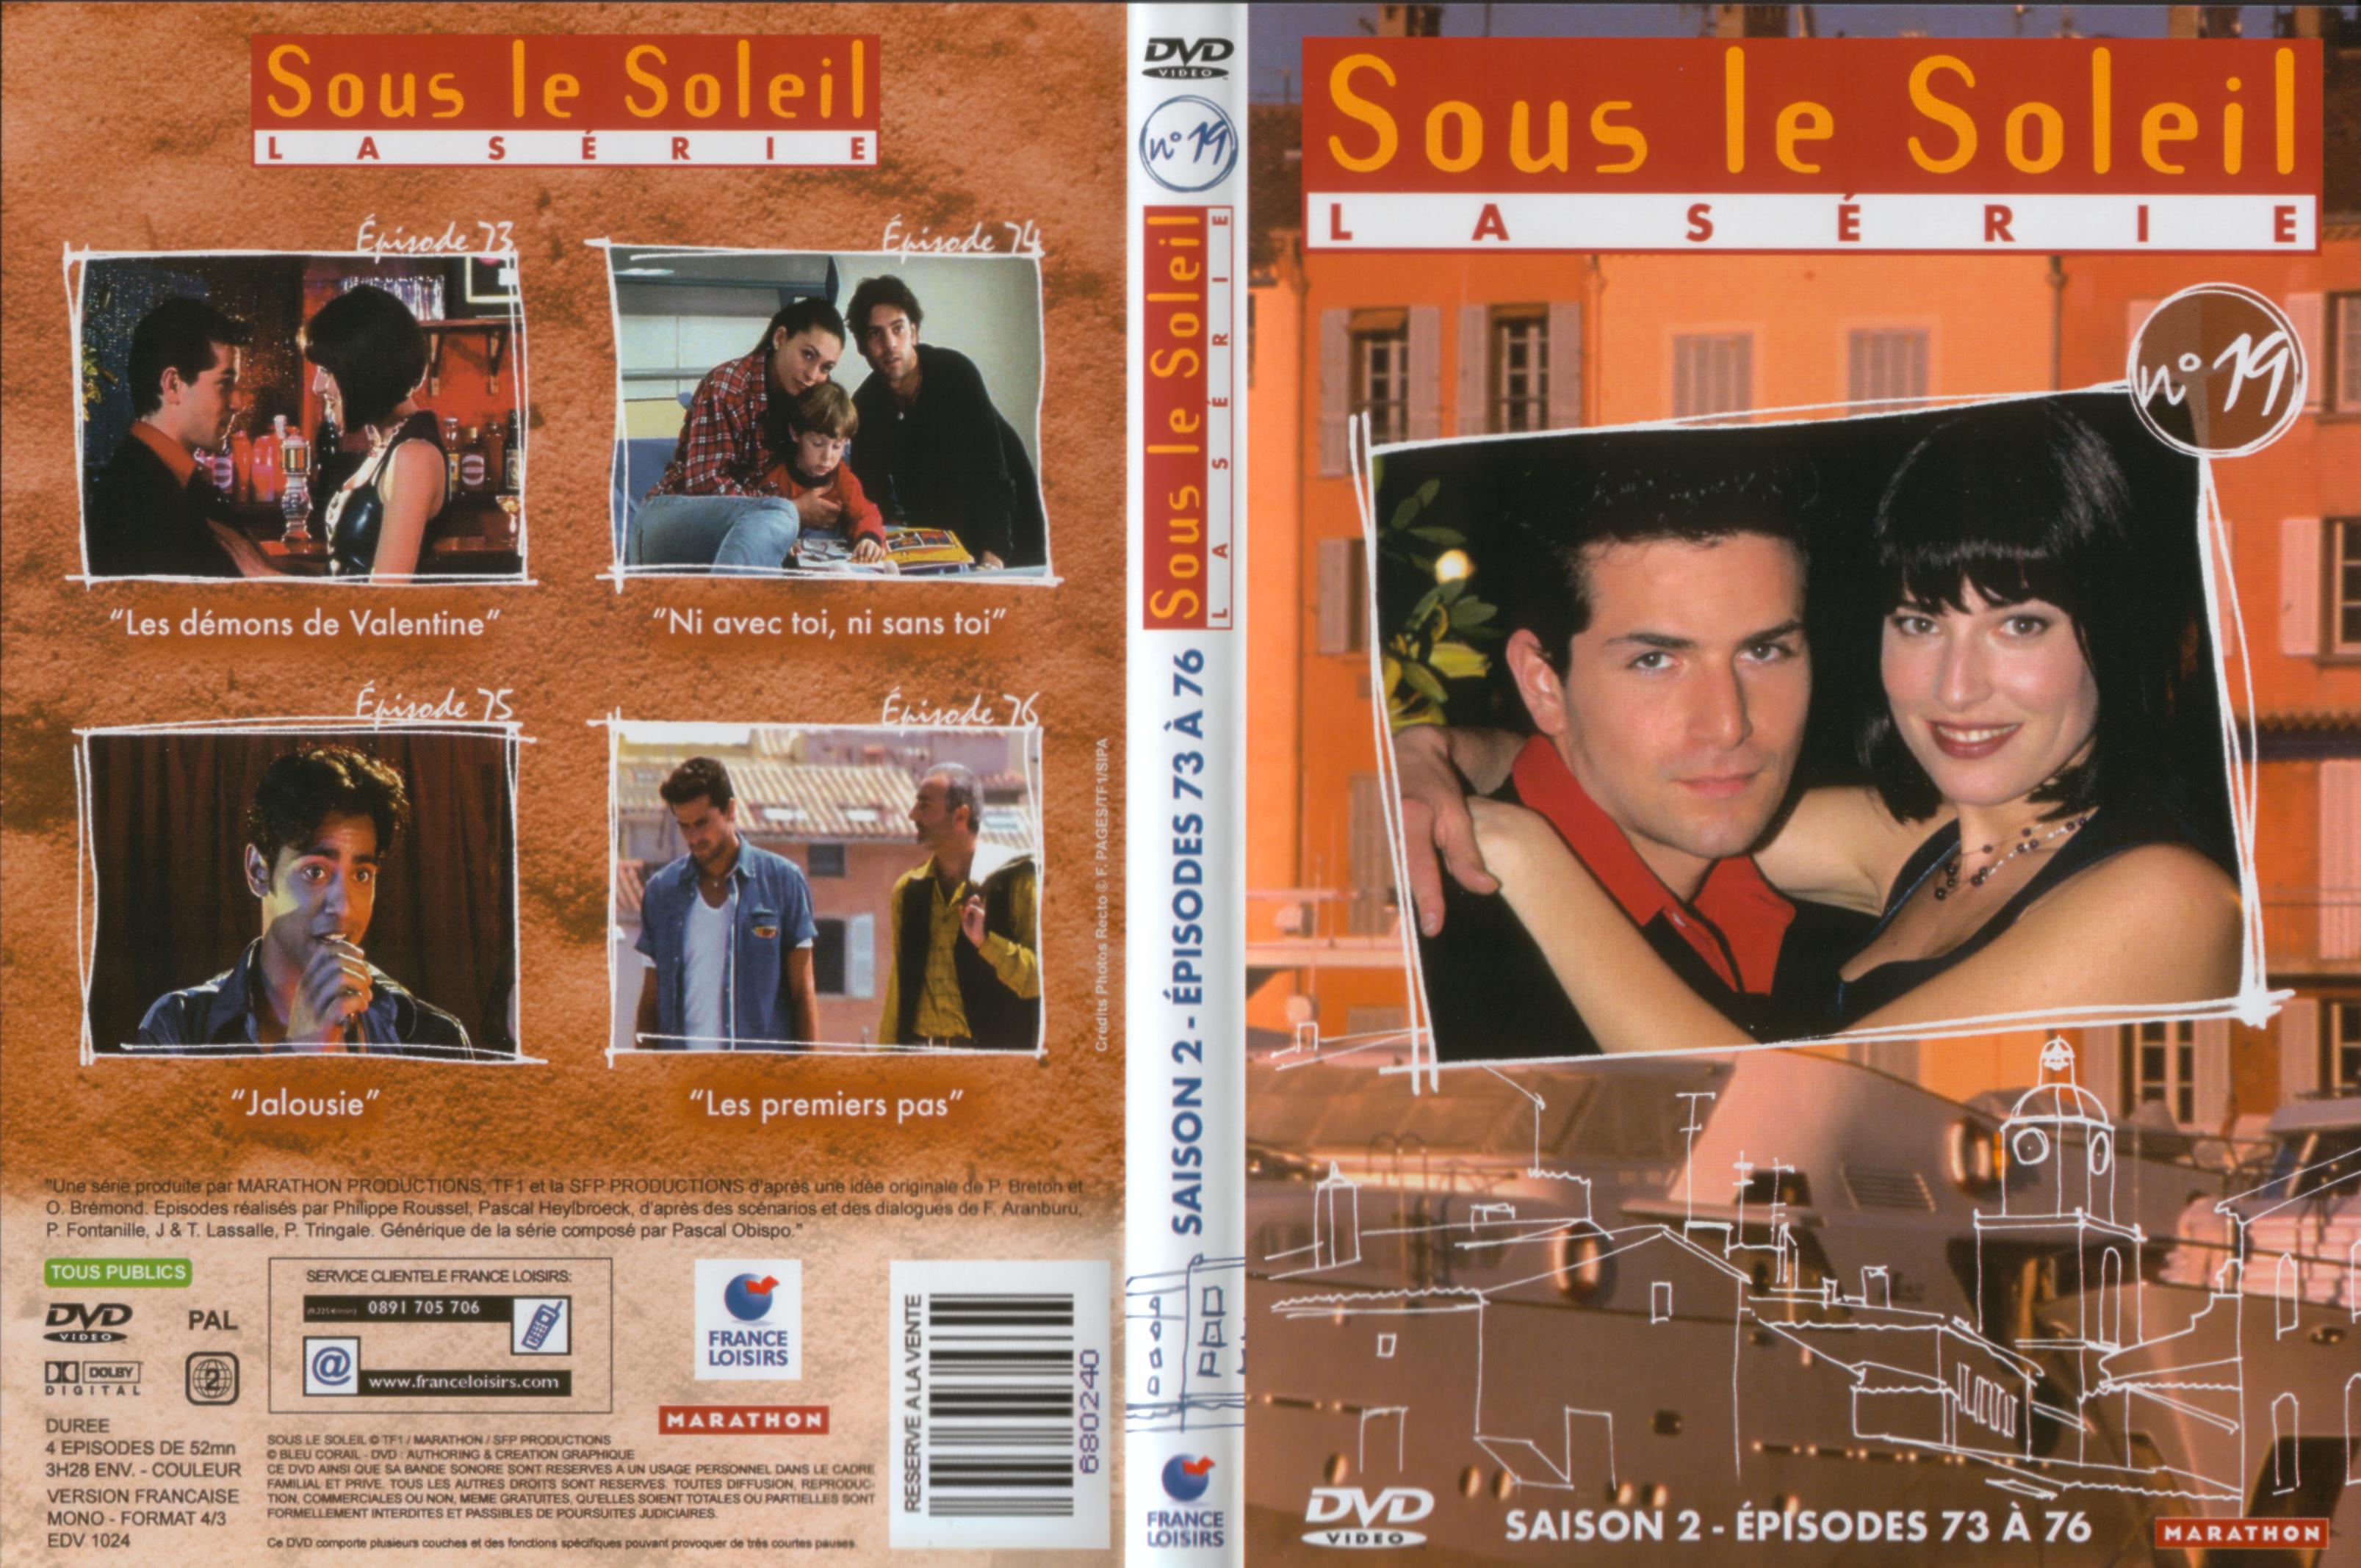 Jaquette DVD Sous le soleil saison 2 vol 19